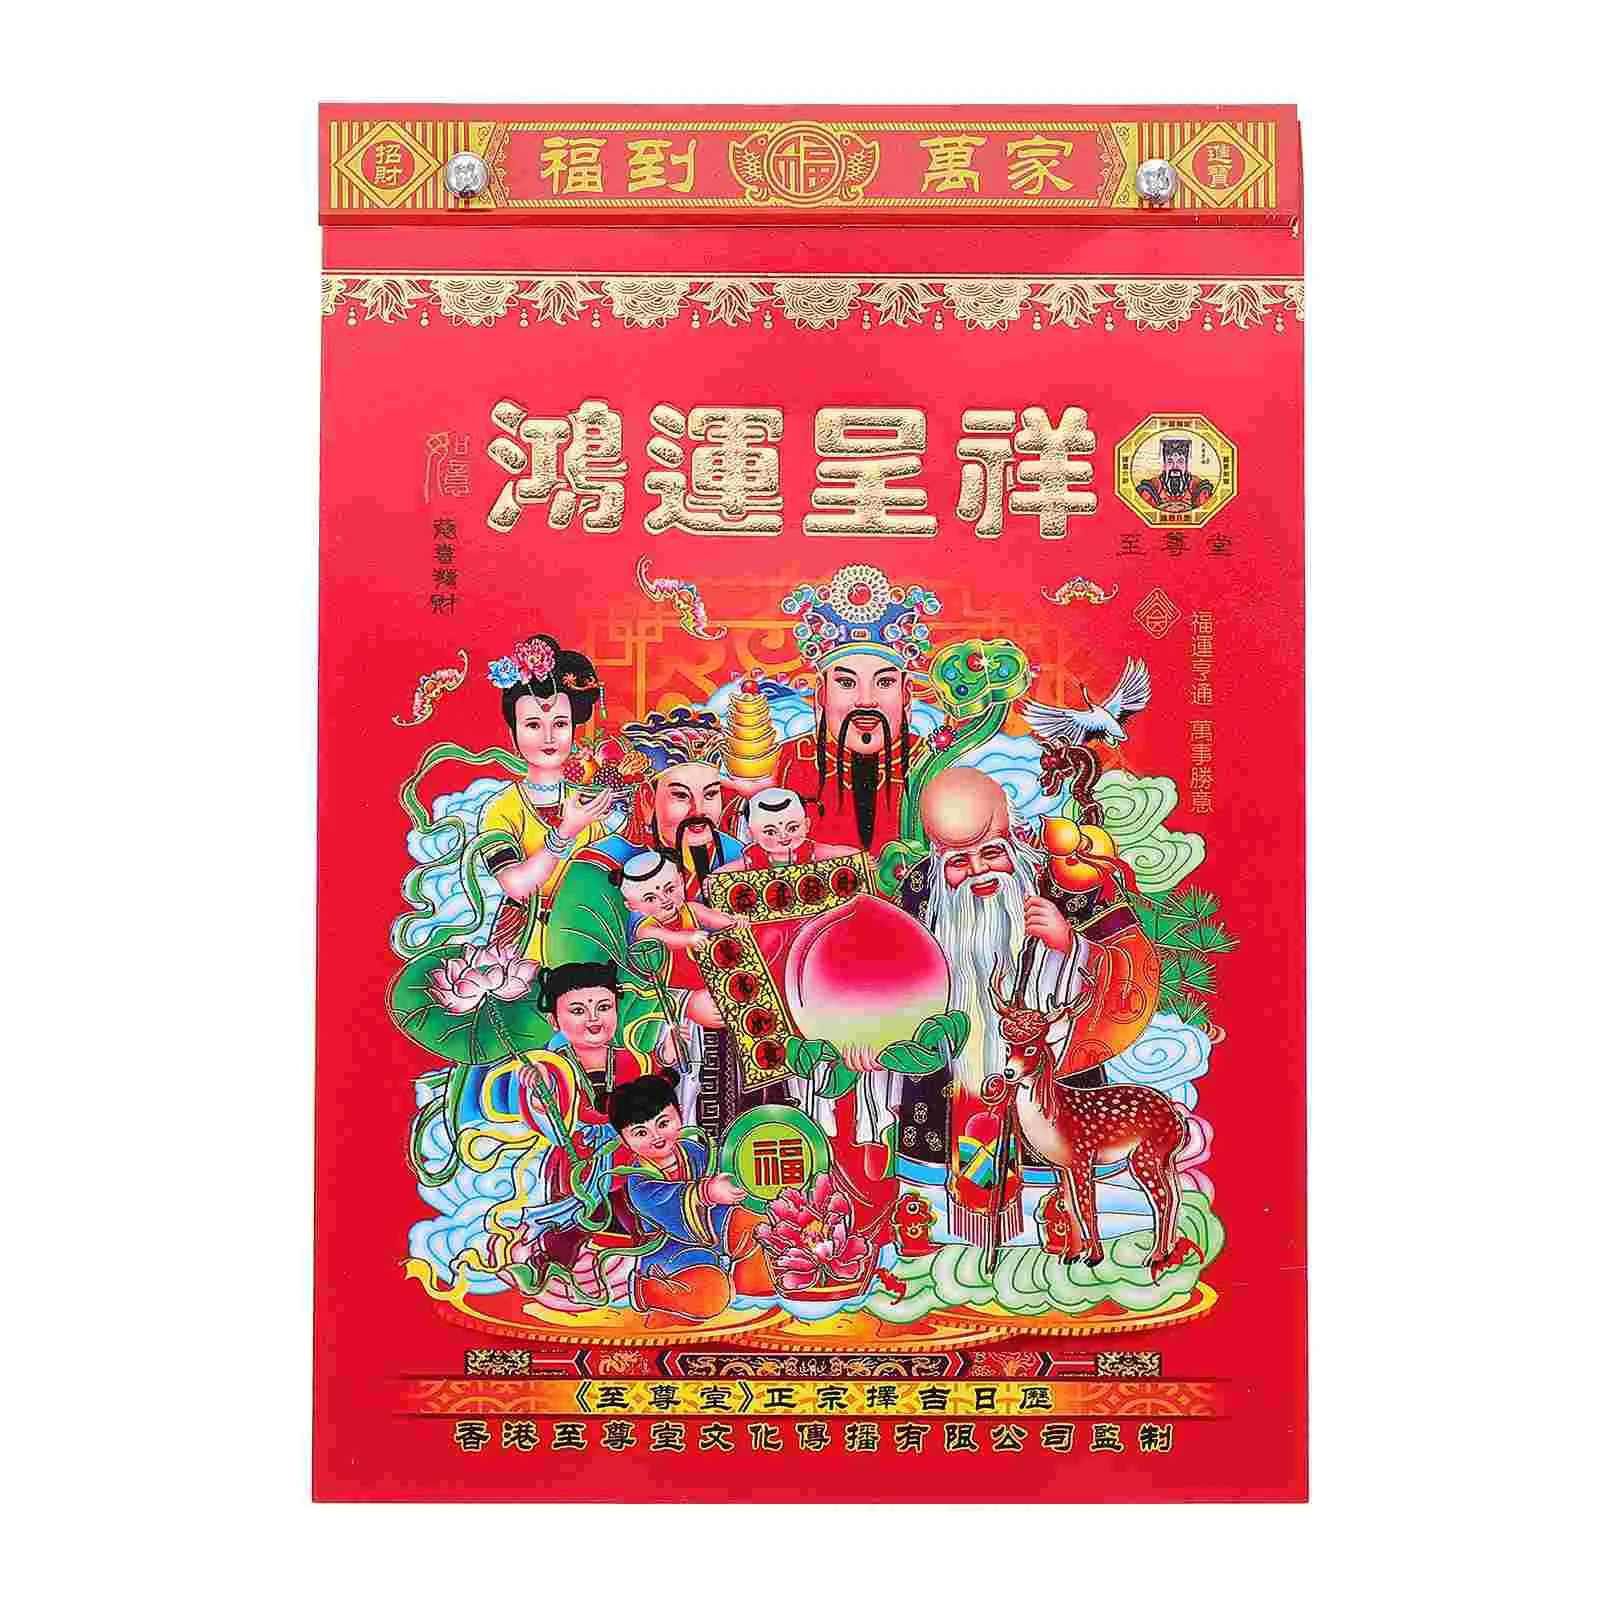 

2023 китайский календарь, ежемесячный Год Кролика, новогодние настенные календари и процветание для праздника Весны на весь год